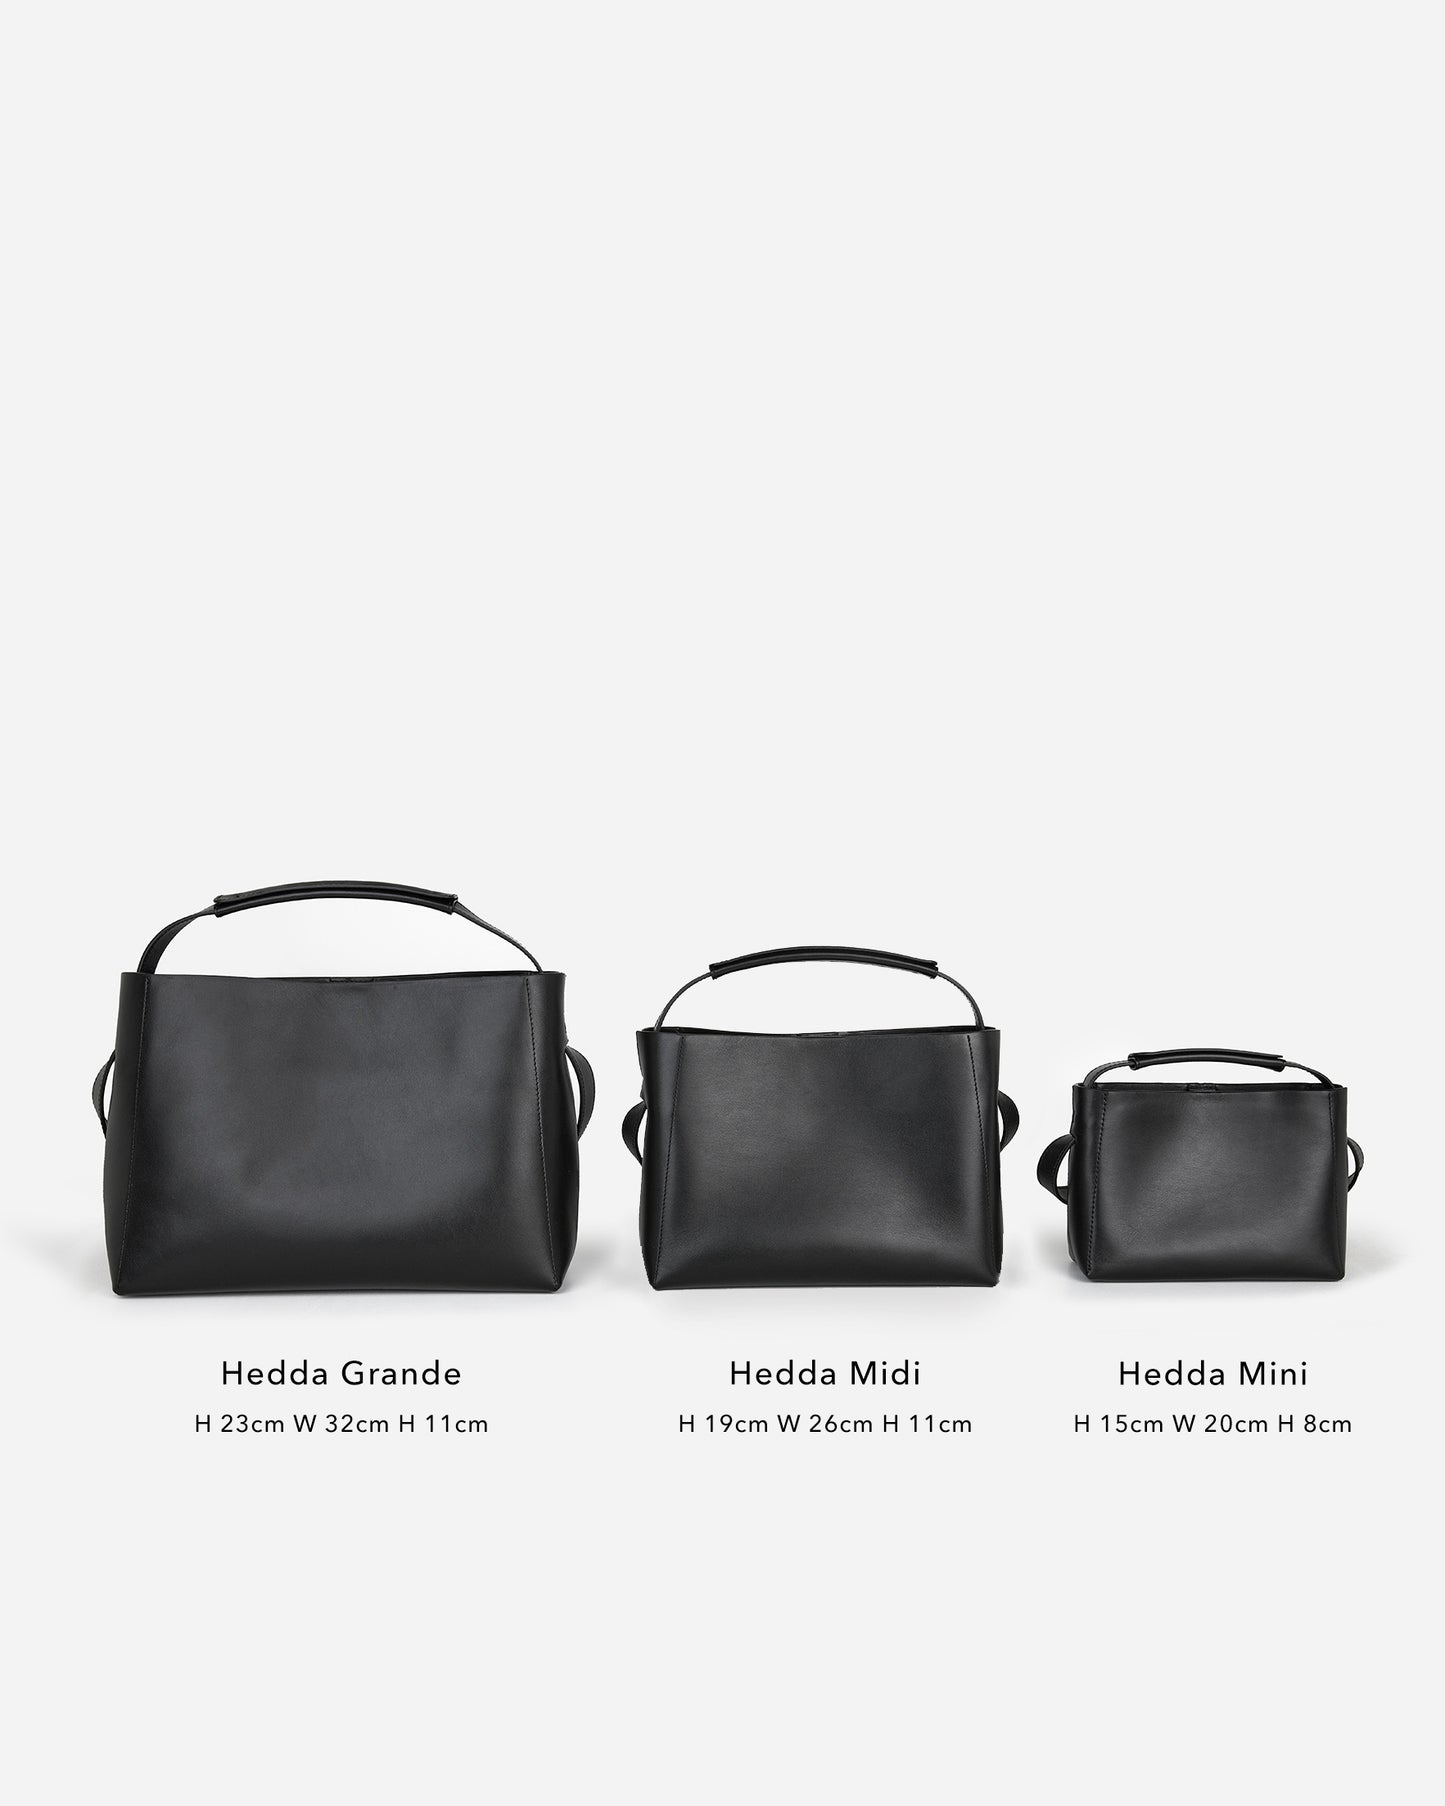 Hedda Grande Handbag Leather Black